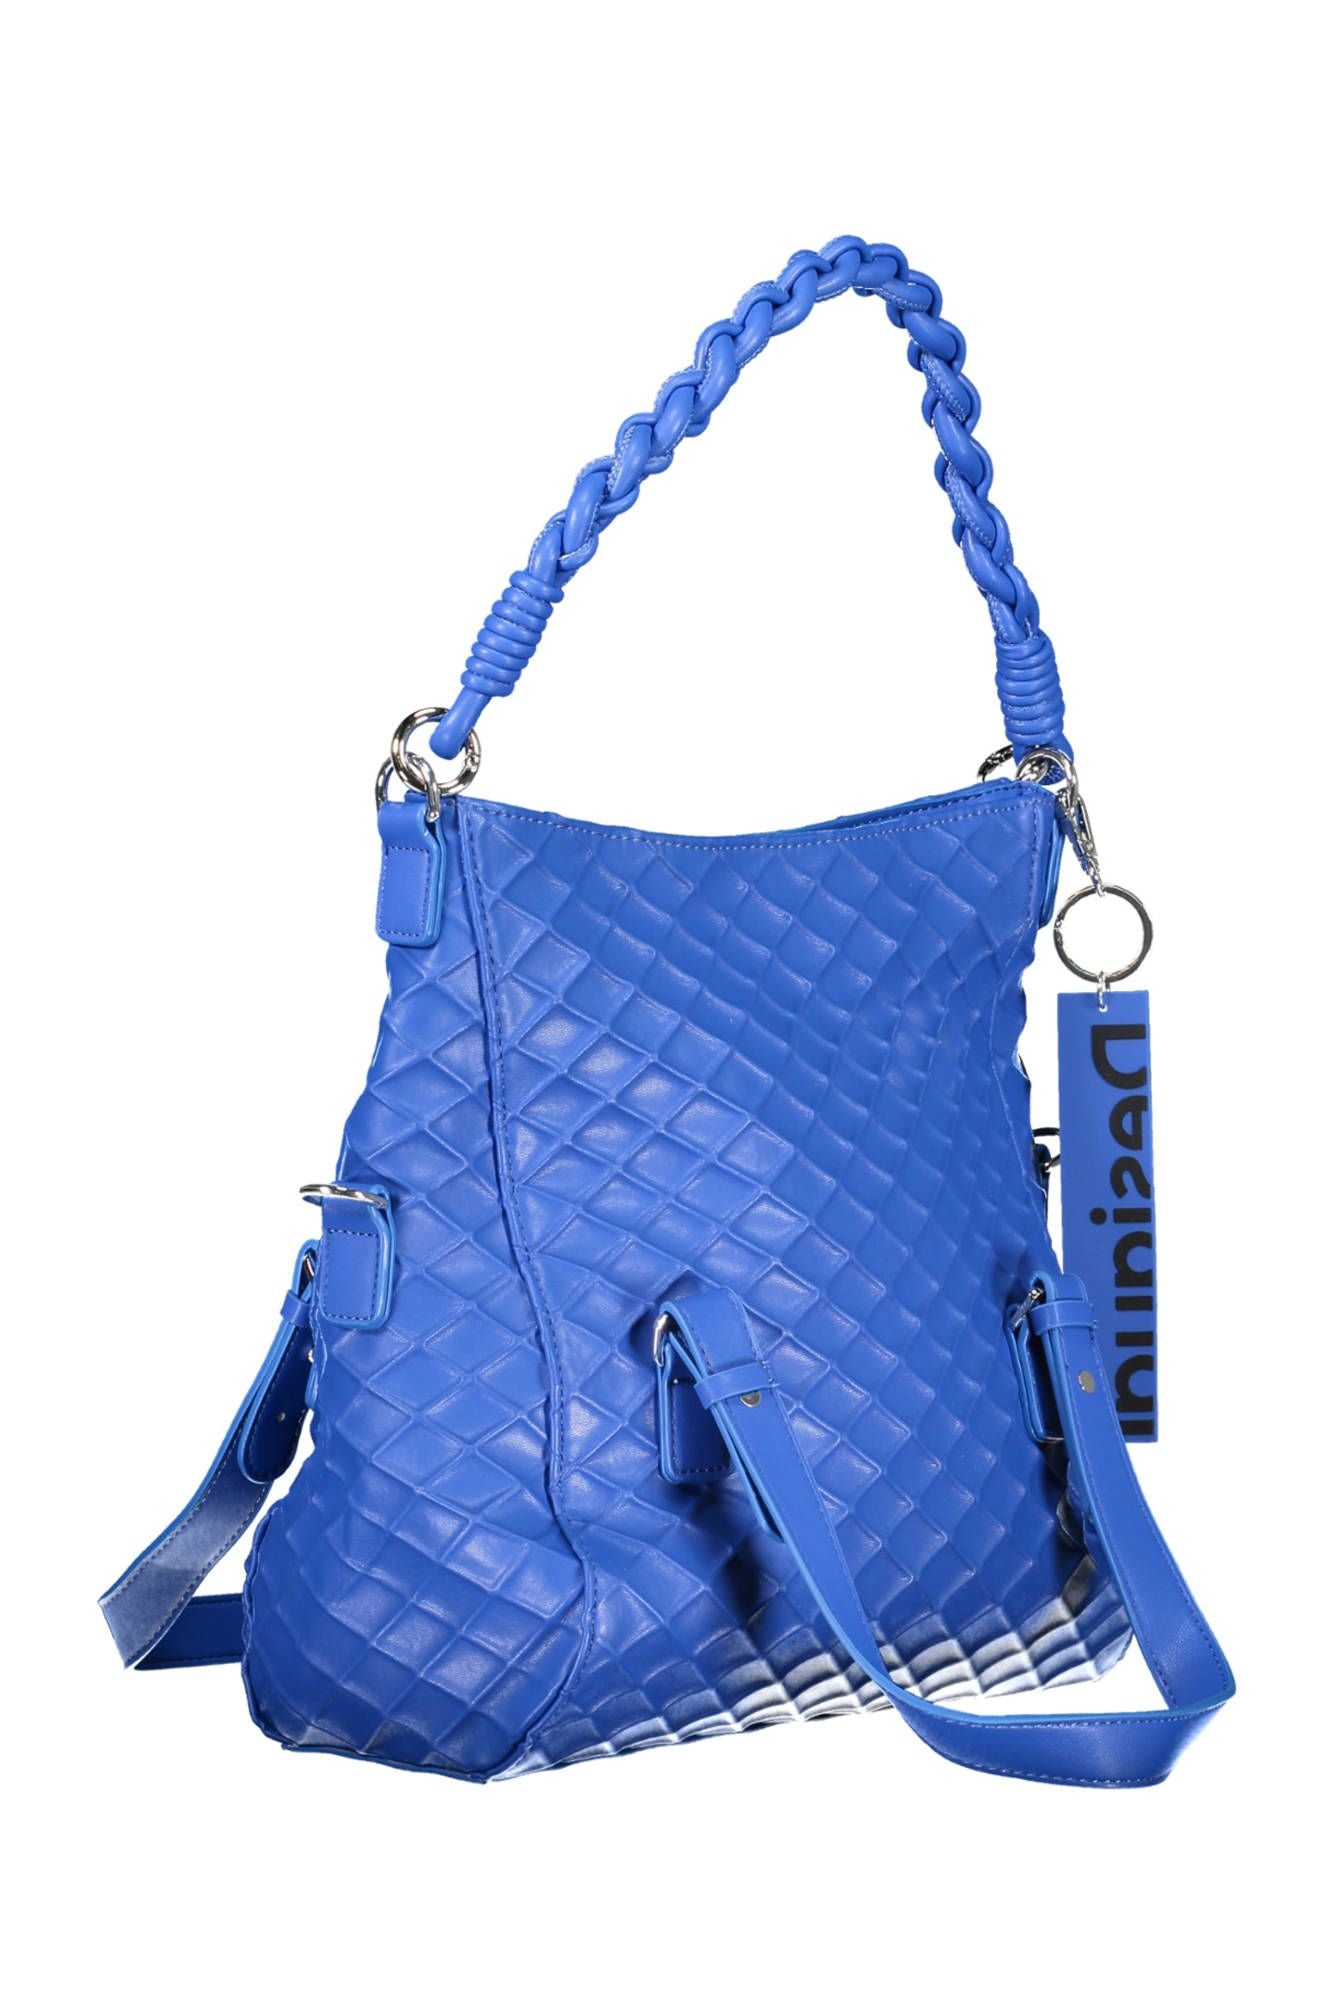 Desigual Blue Polyurethane Handbag - Walbiz.com